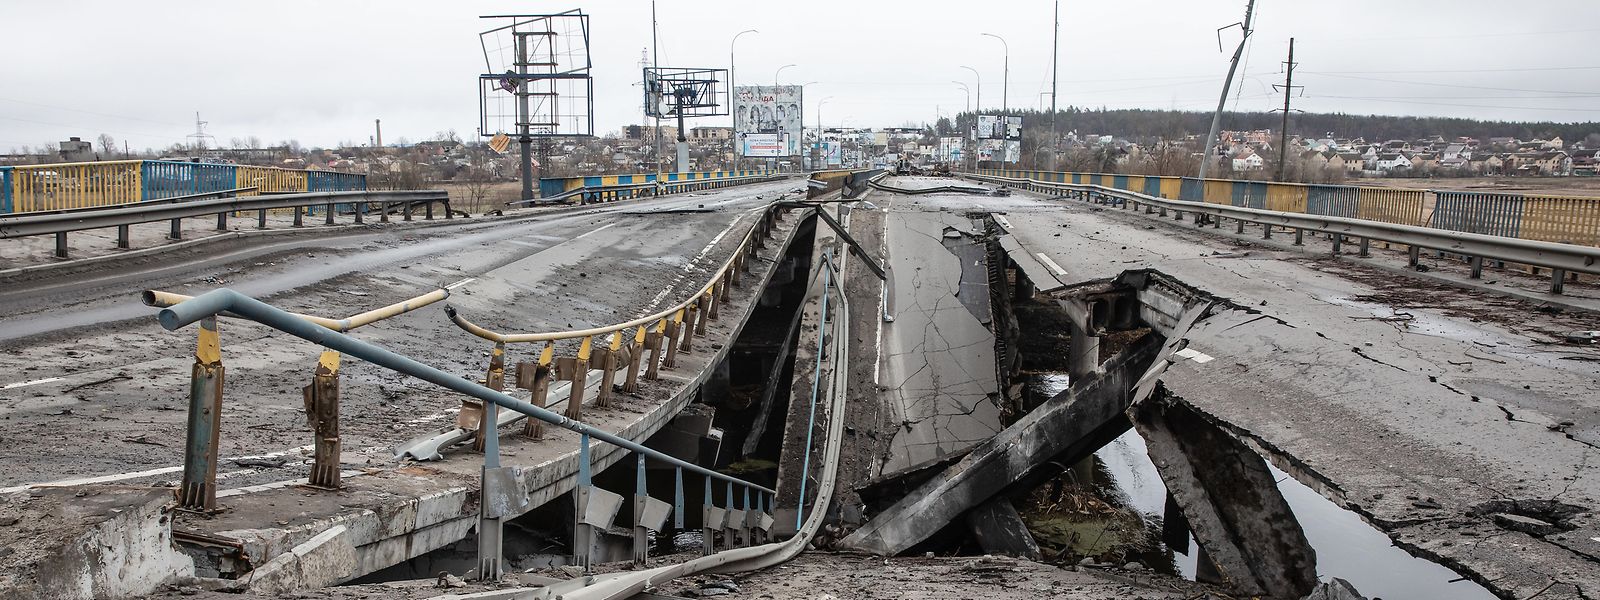 Die durch die Bombardierung zerstörte Brücke auf der Autobahn bei Butscha. Fast 300 Zivilisten wurden entlang der Straße in Butscha, einer Pendlerstadt außerhalb der Hauptstadt, getötet.